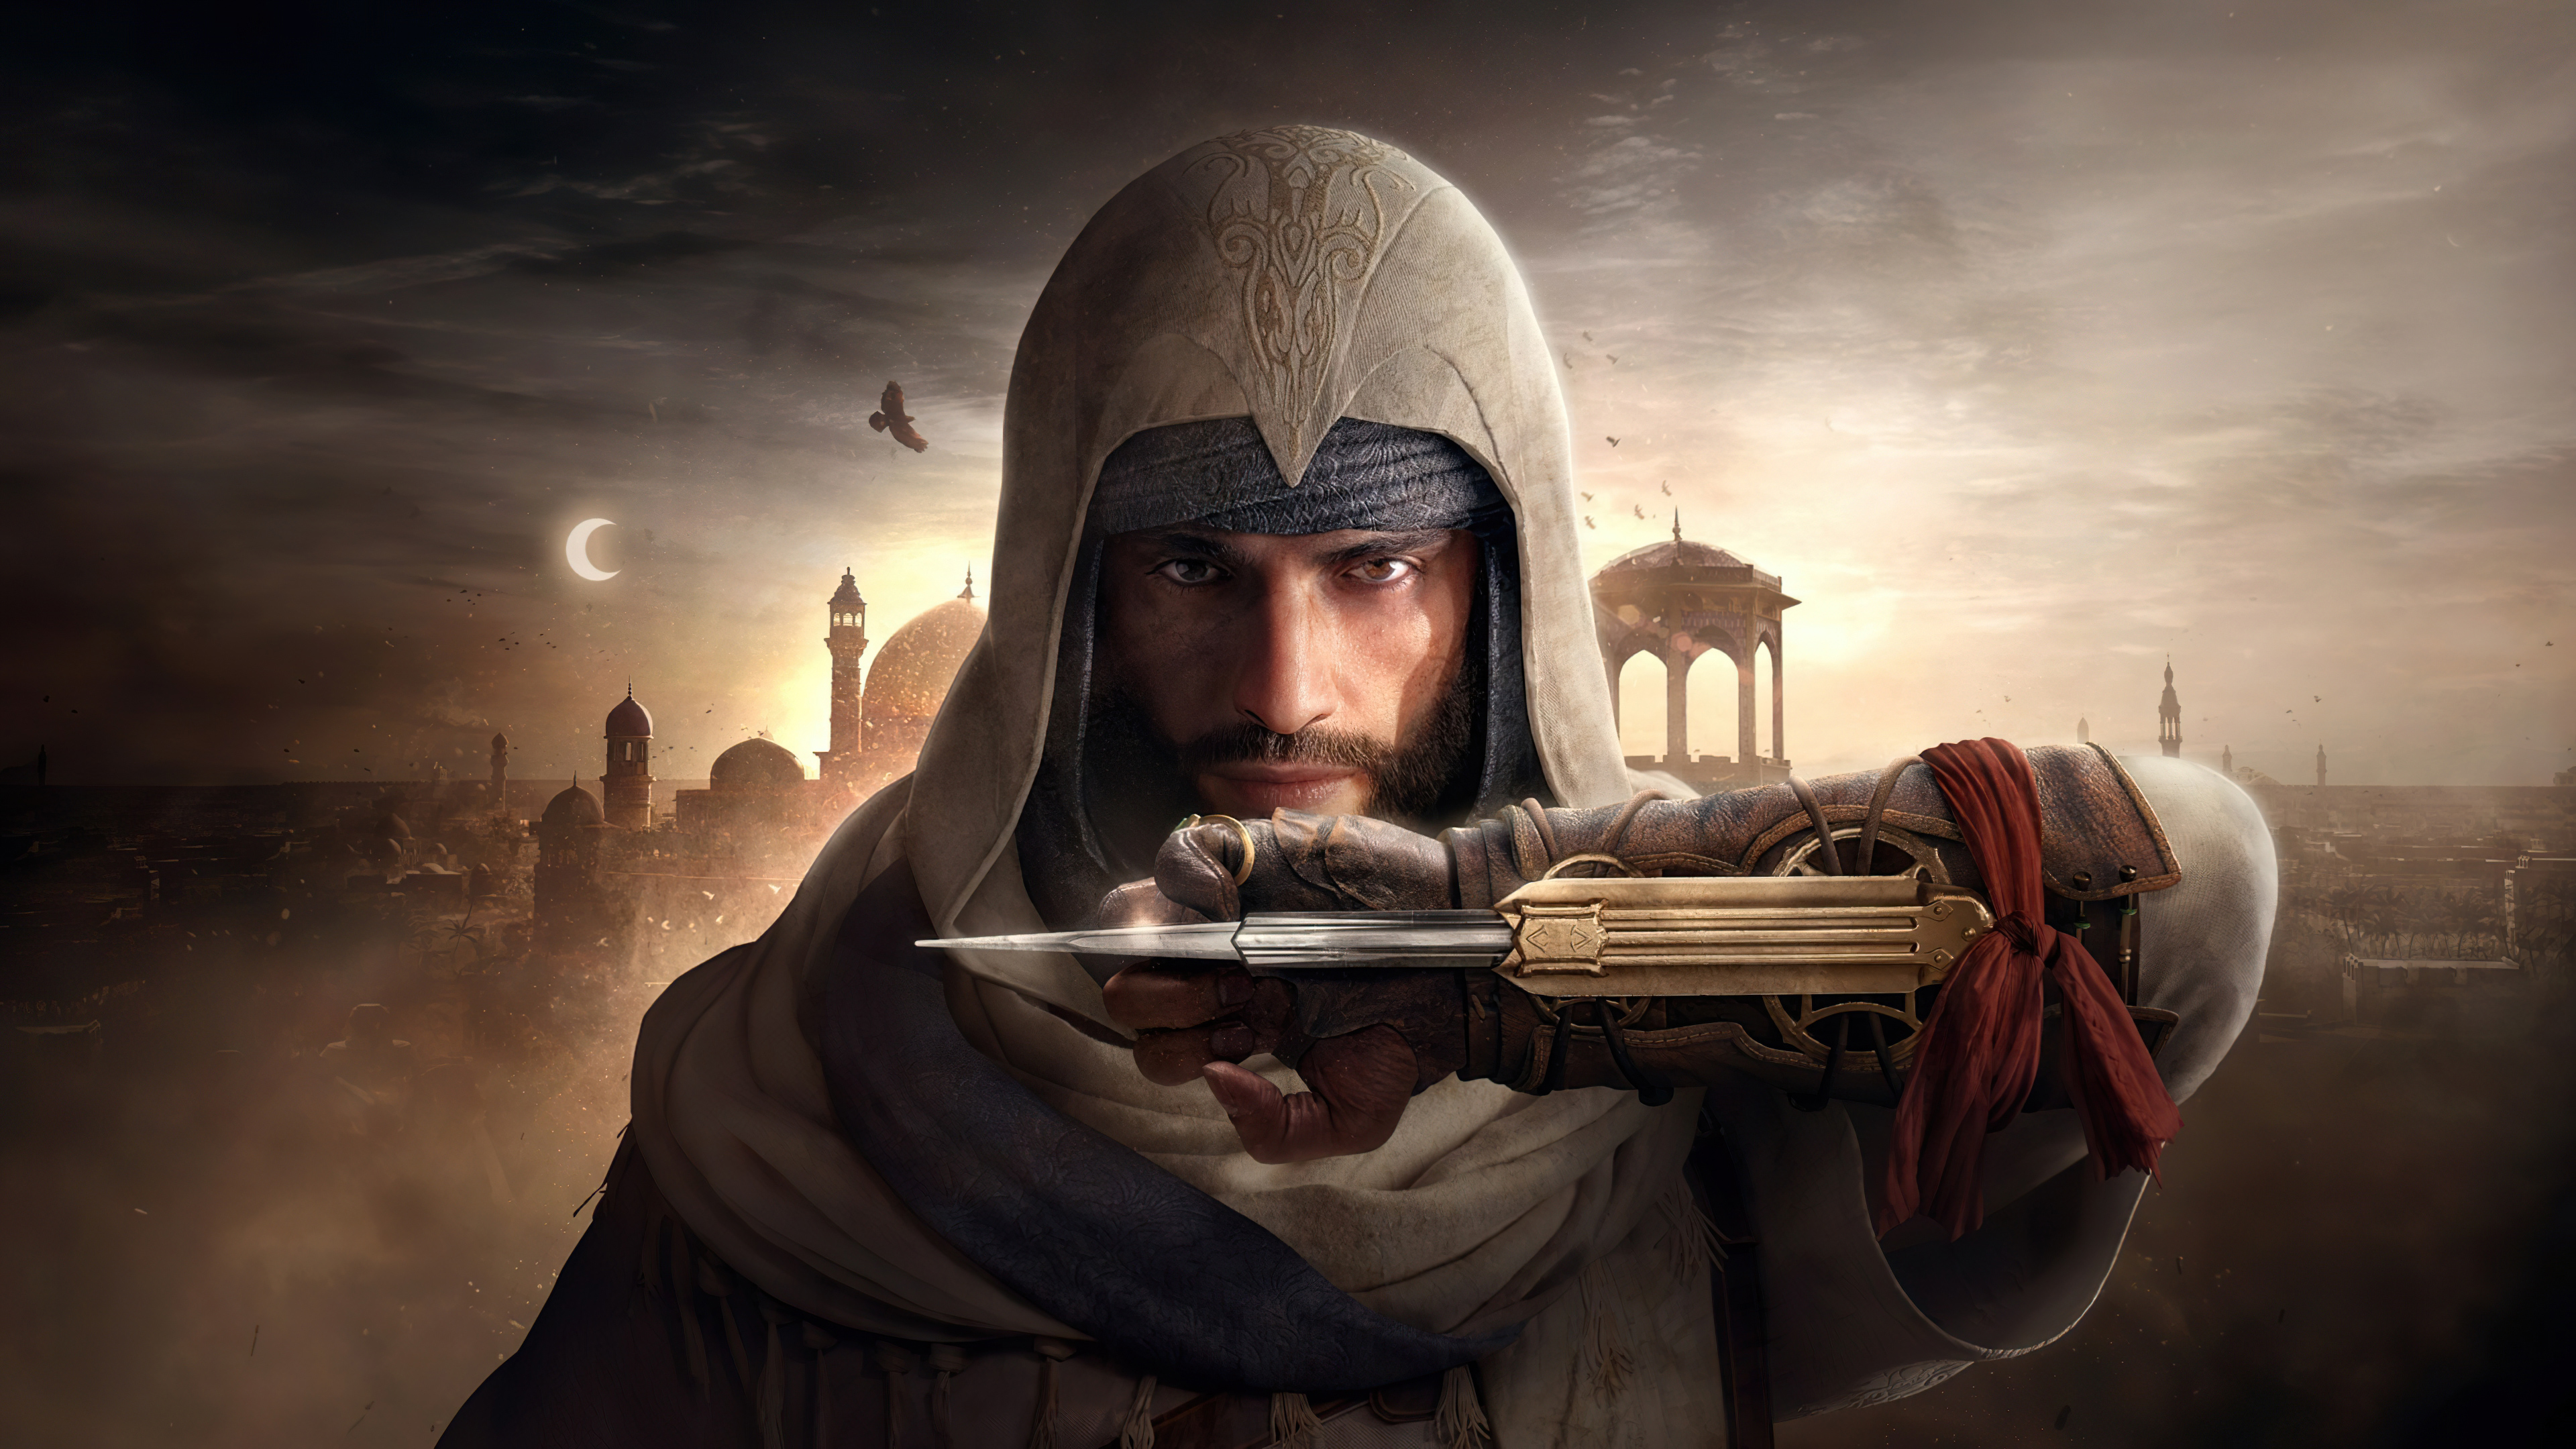 Fondos de pantalla Assassins Creed Mirage PS5